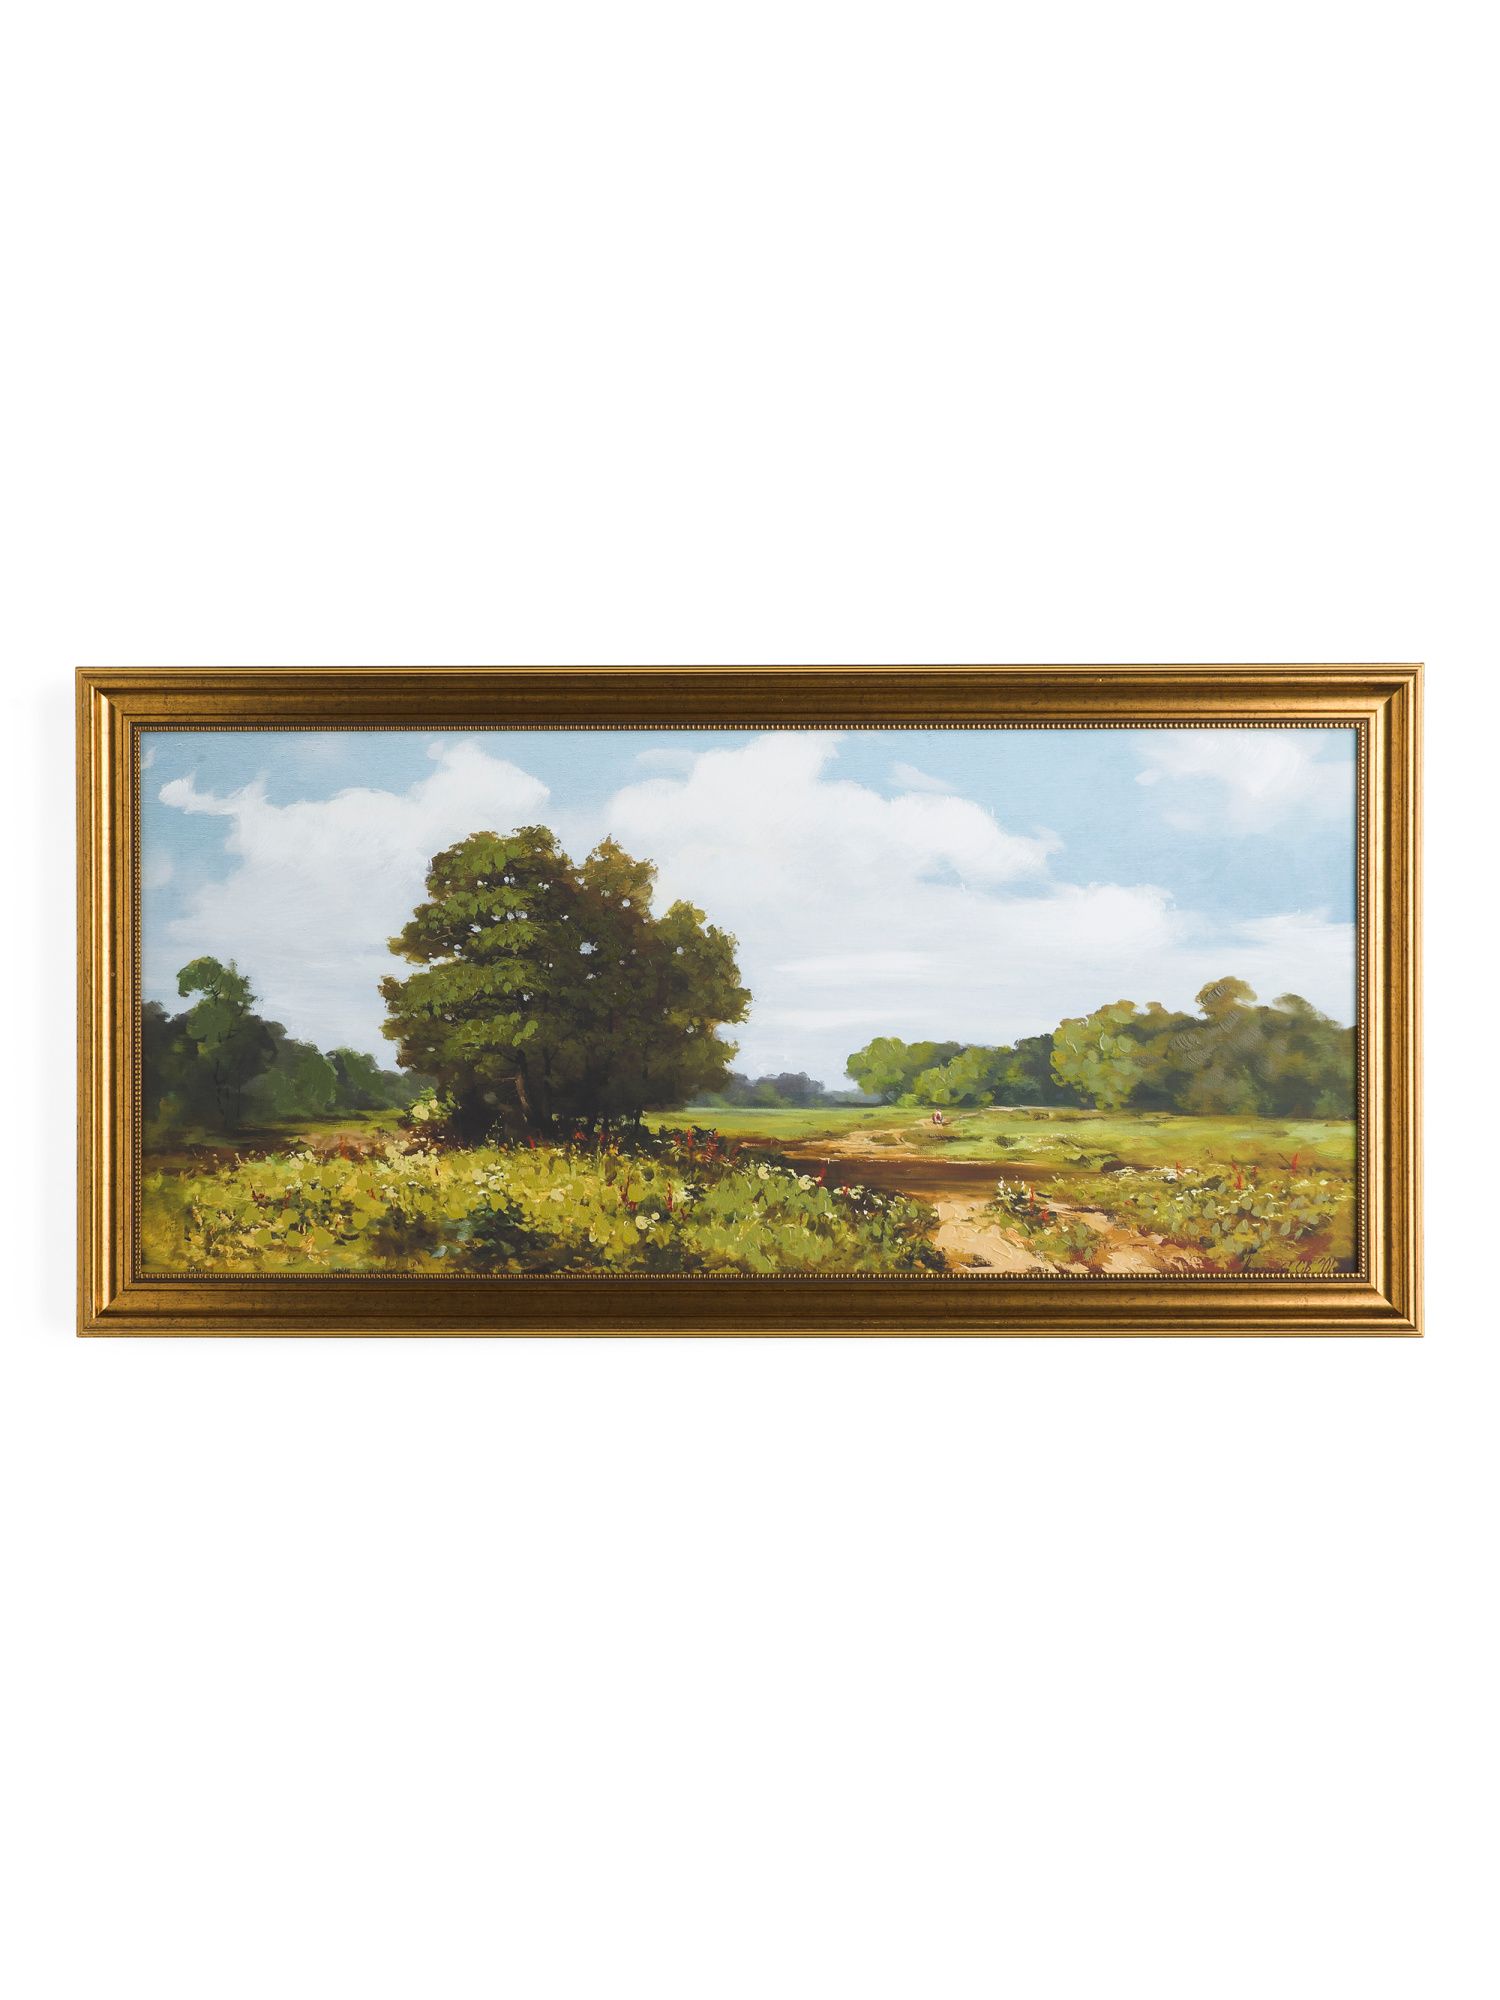 40x20 Joshua Tree Framed Wall Art | Marshalls